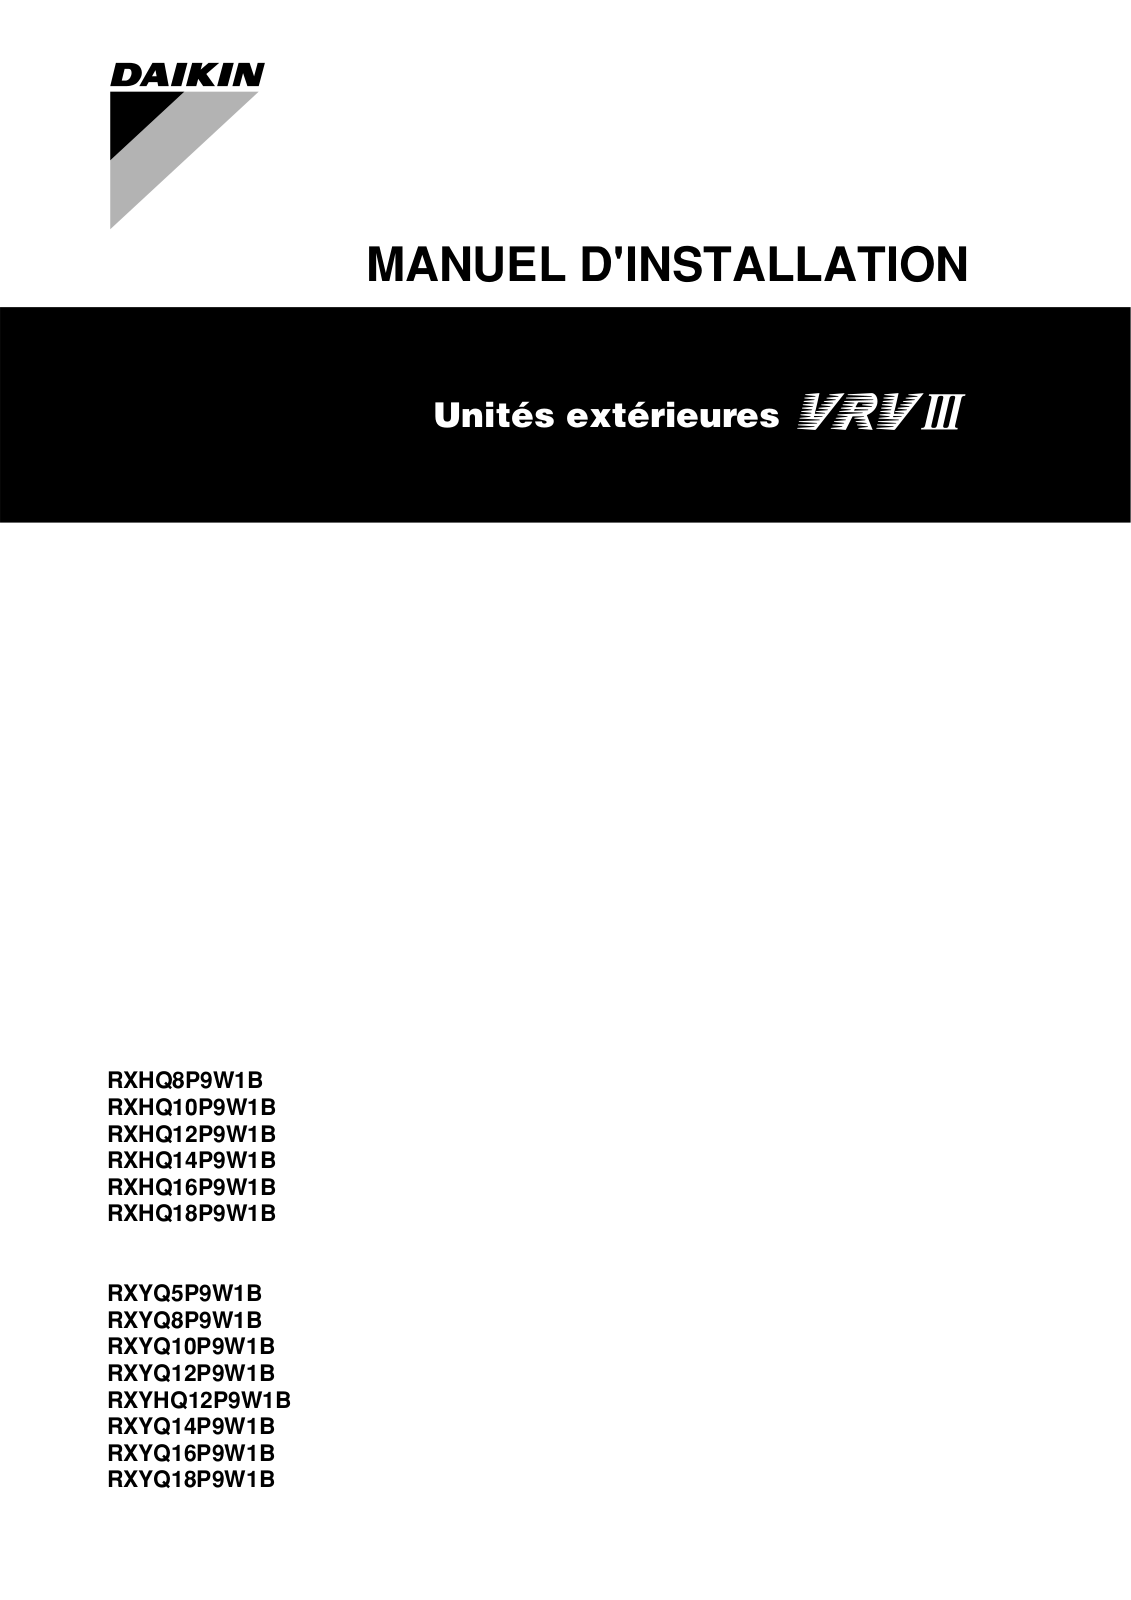 Daikin RXHQ8P9W1B, RXHQ10P9W1B, RXHQ12P9W1B, RXHQ14P9W1B, RXHQ16P9W1B Installation manuals